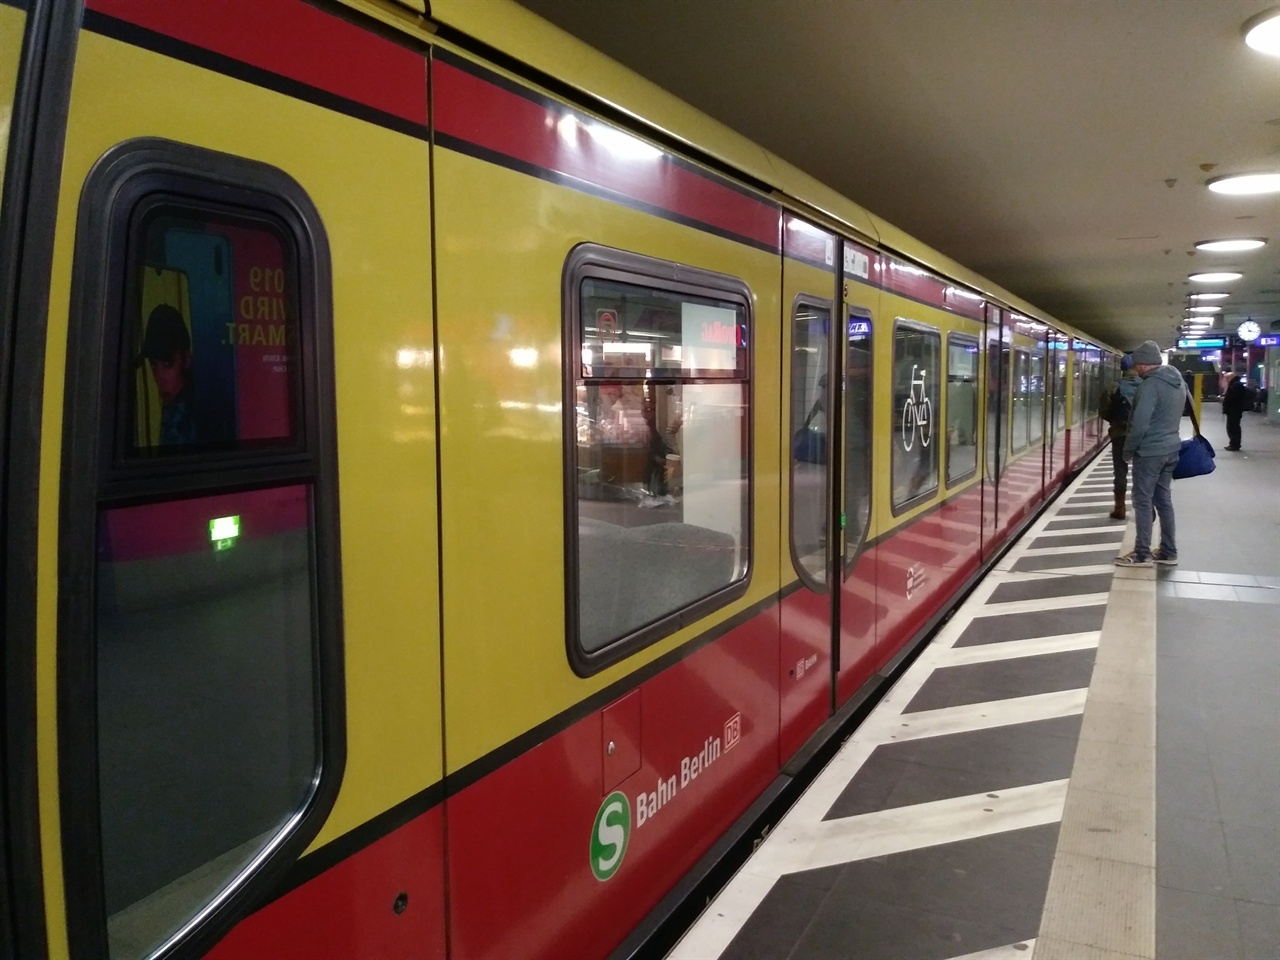 베를린의 지하철은 역이든 객차든 좁고 낡았다. 그런 곳에 자전거를 실을 수 있도록 하고 있으니 놀라울 뿐이다. 사진 속 객차는 'S반'으로, 'S'는 도시 내부를 운행한다는 의미고, '반(bahn)'은 독일어로 기차라는 뜻이다.